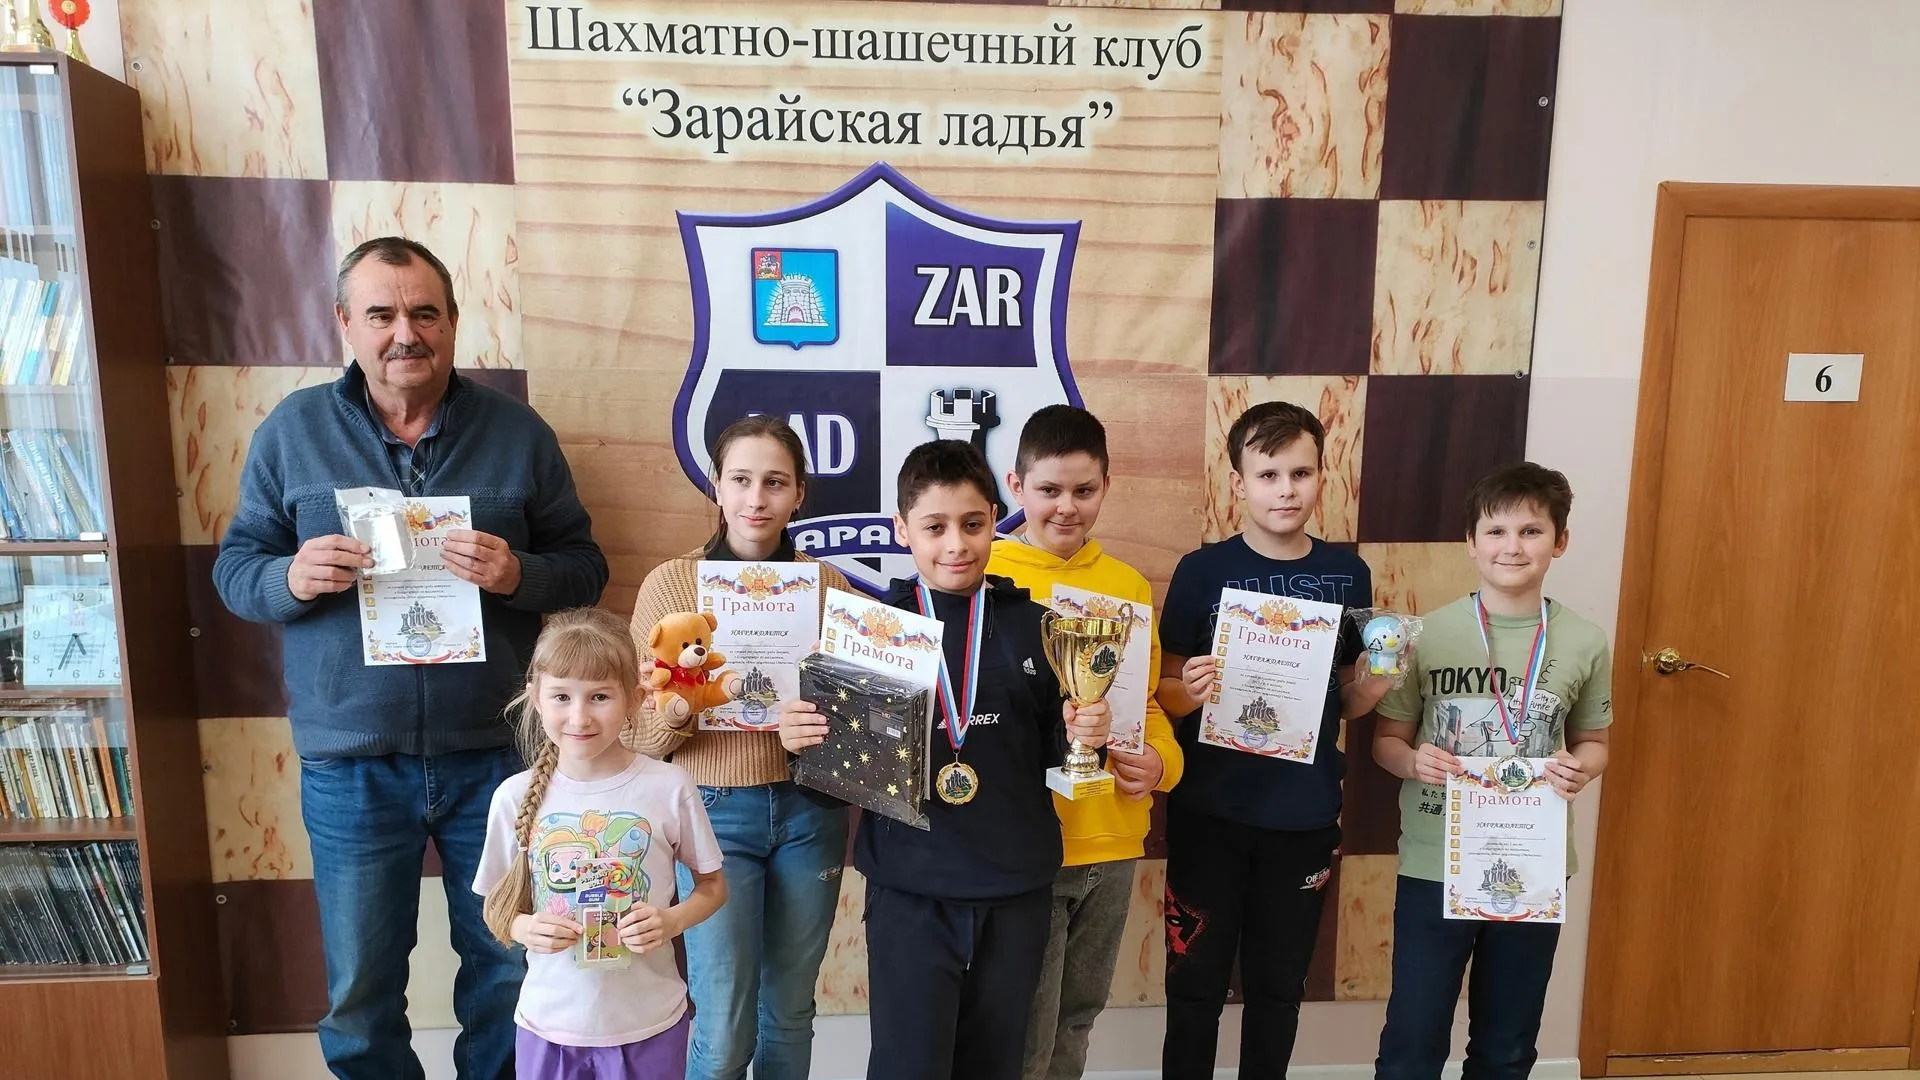 Представители Каширы заняли первое место в общем зачете блицтурнира по шахматам